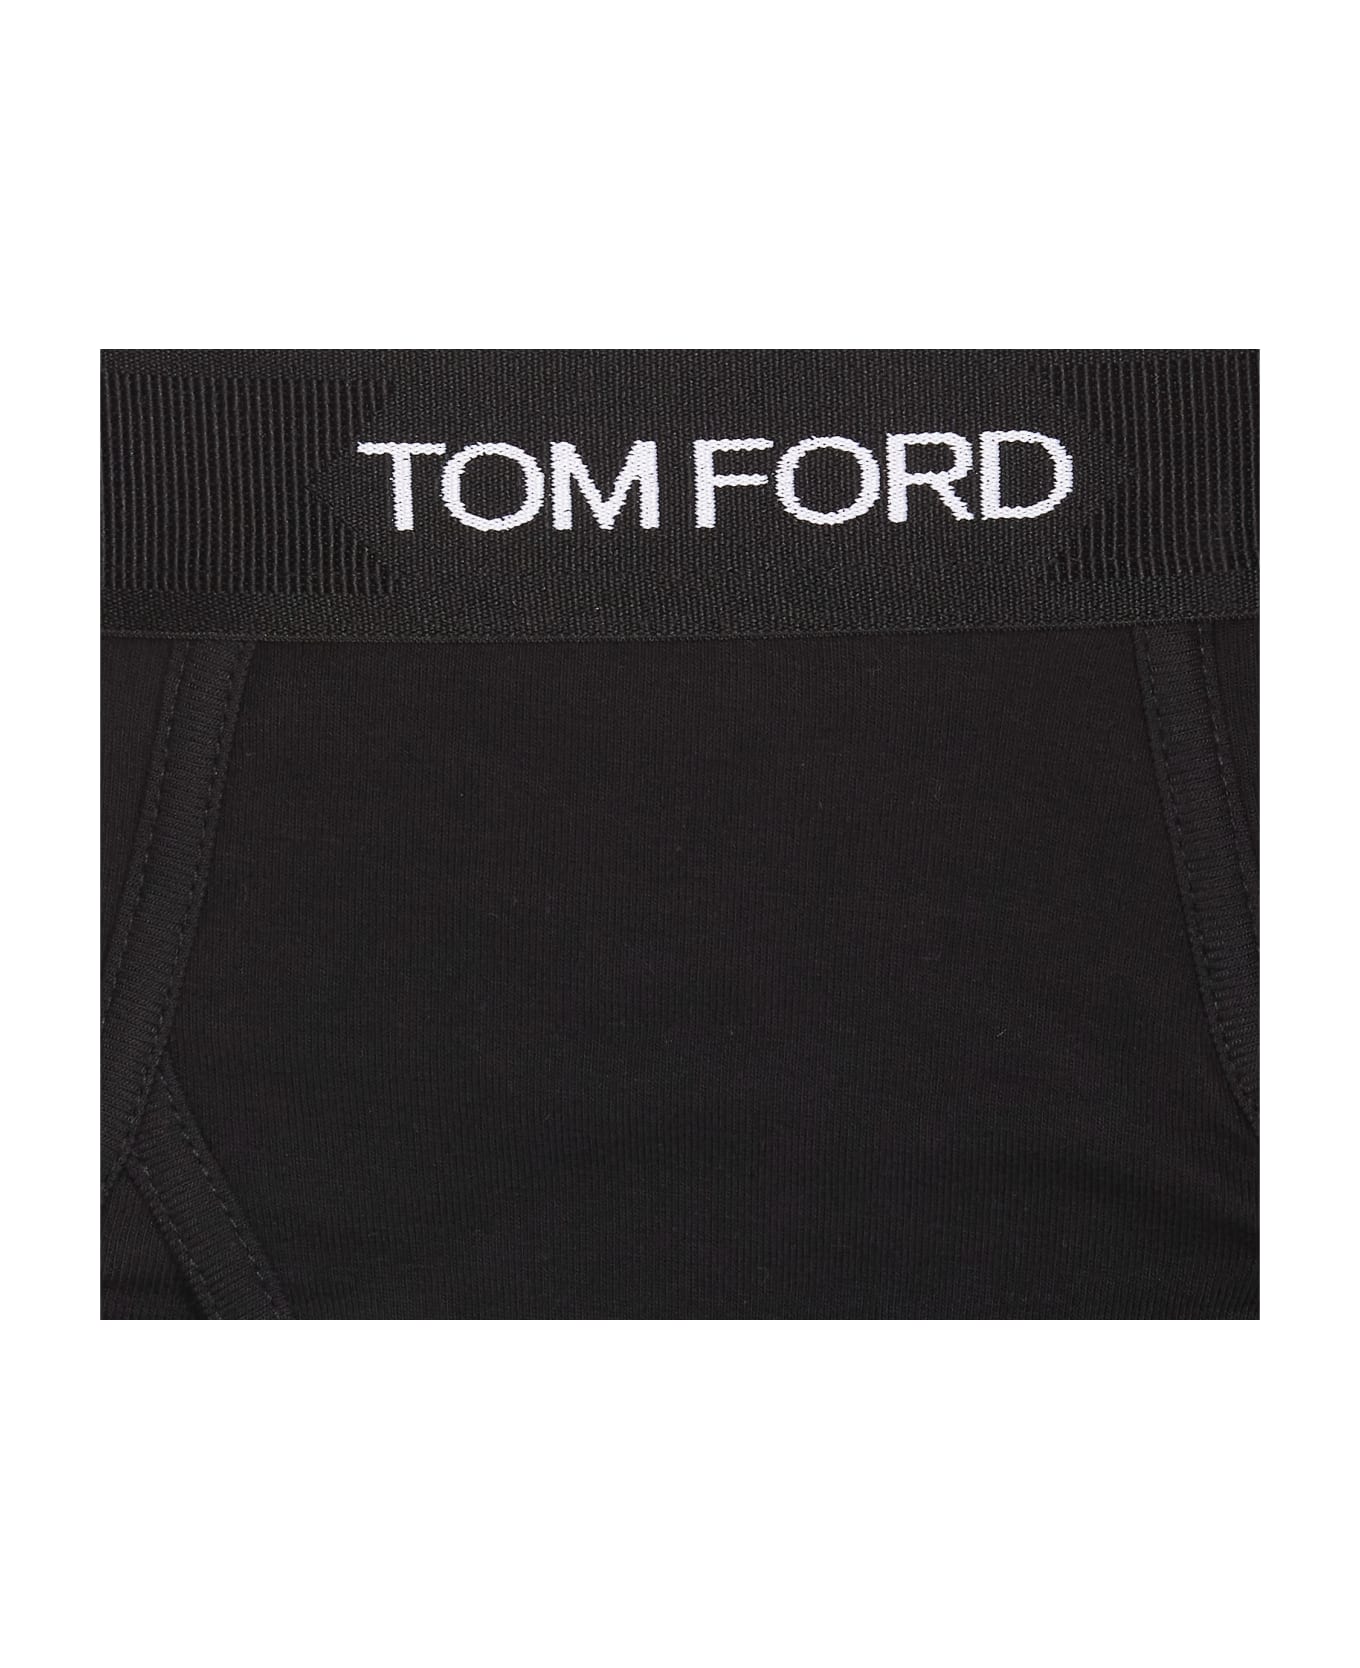 Tom Ford Logo Slip - Black